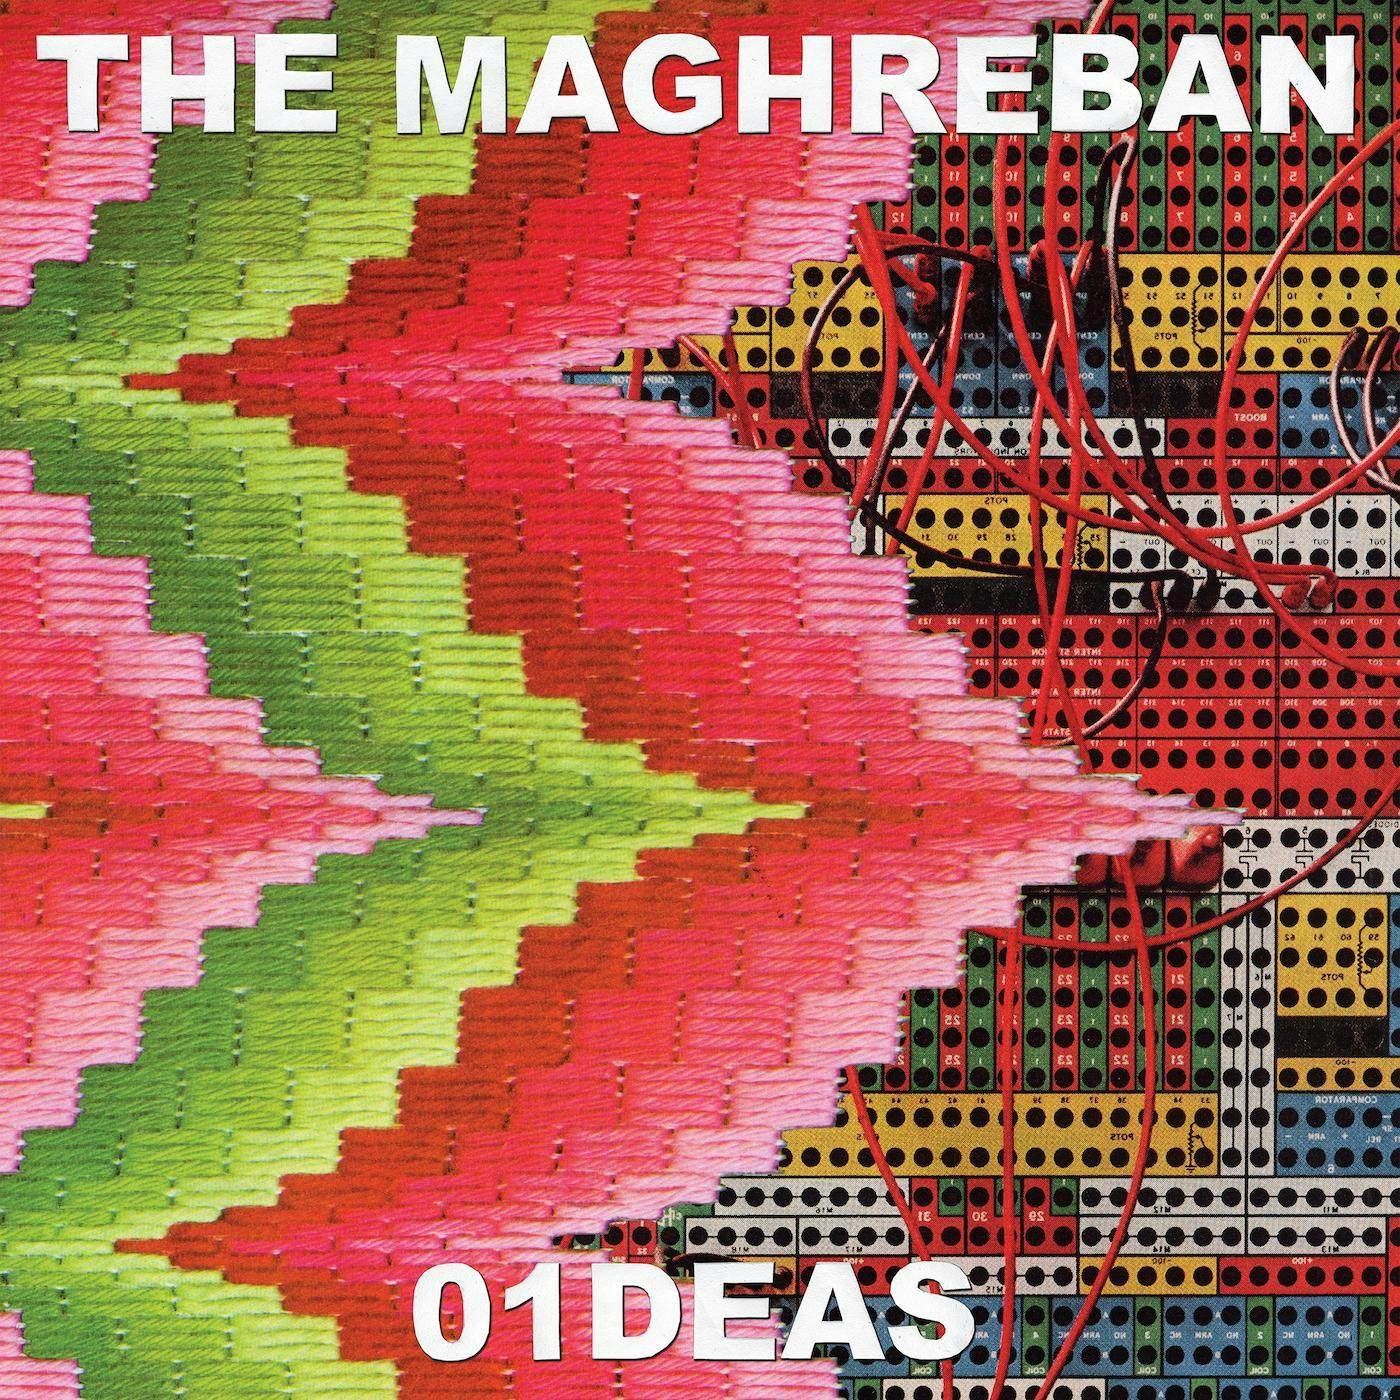 The Maghreban 01DEAS Vinyl Record